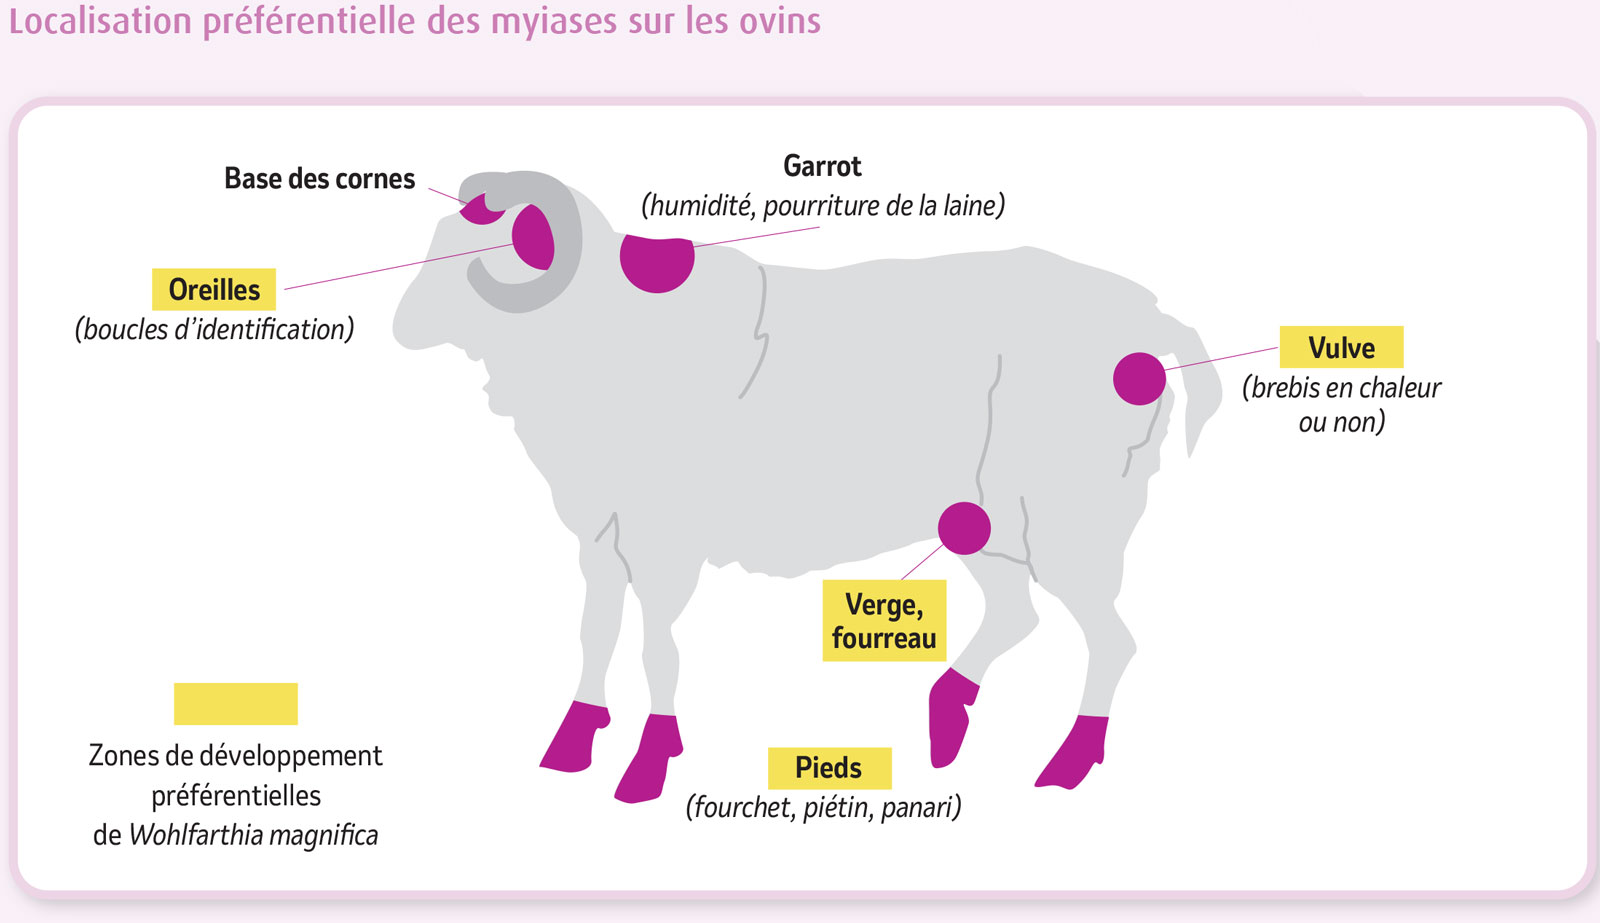 Illustration technique de localisation préférentielle des myiases sur les ovins.